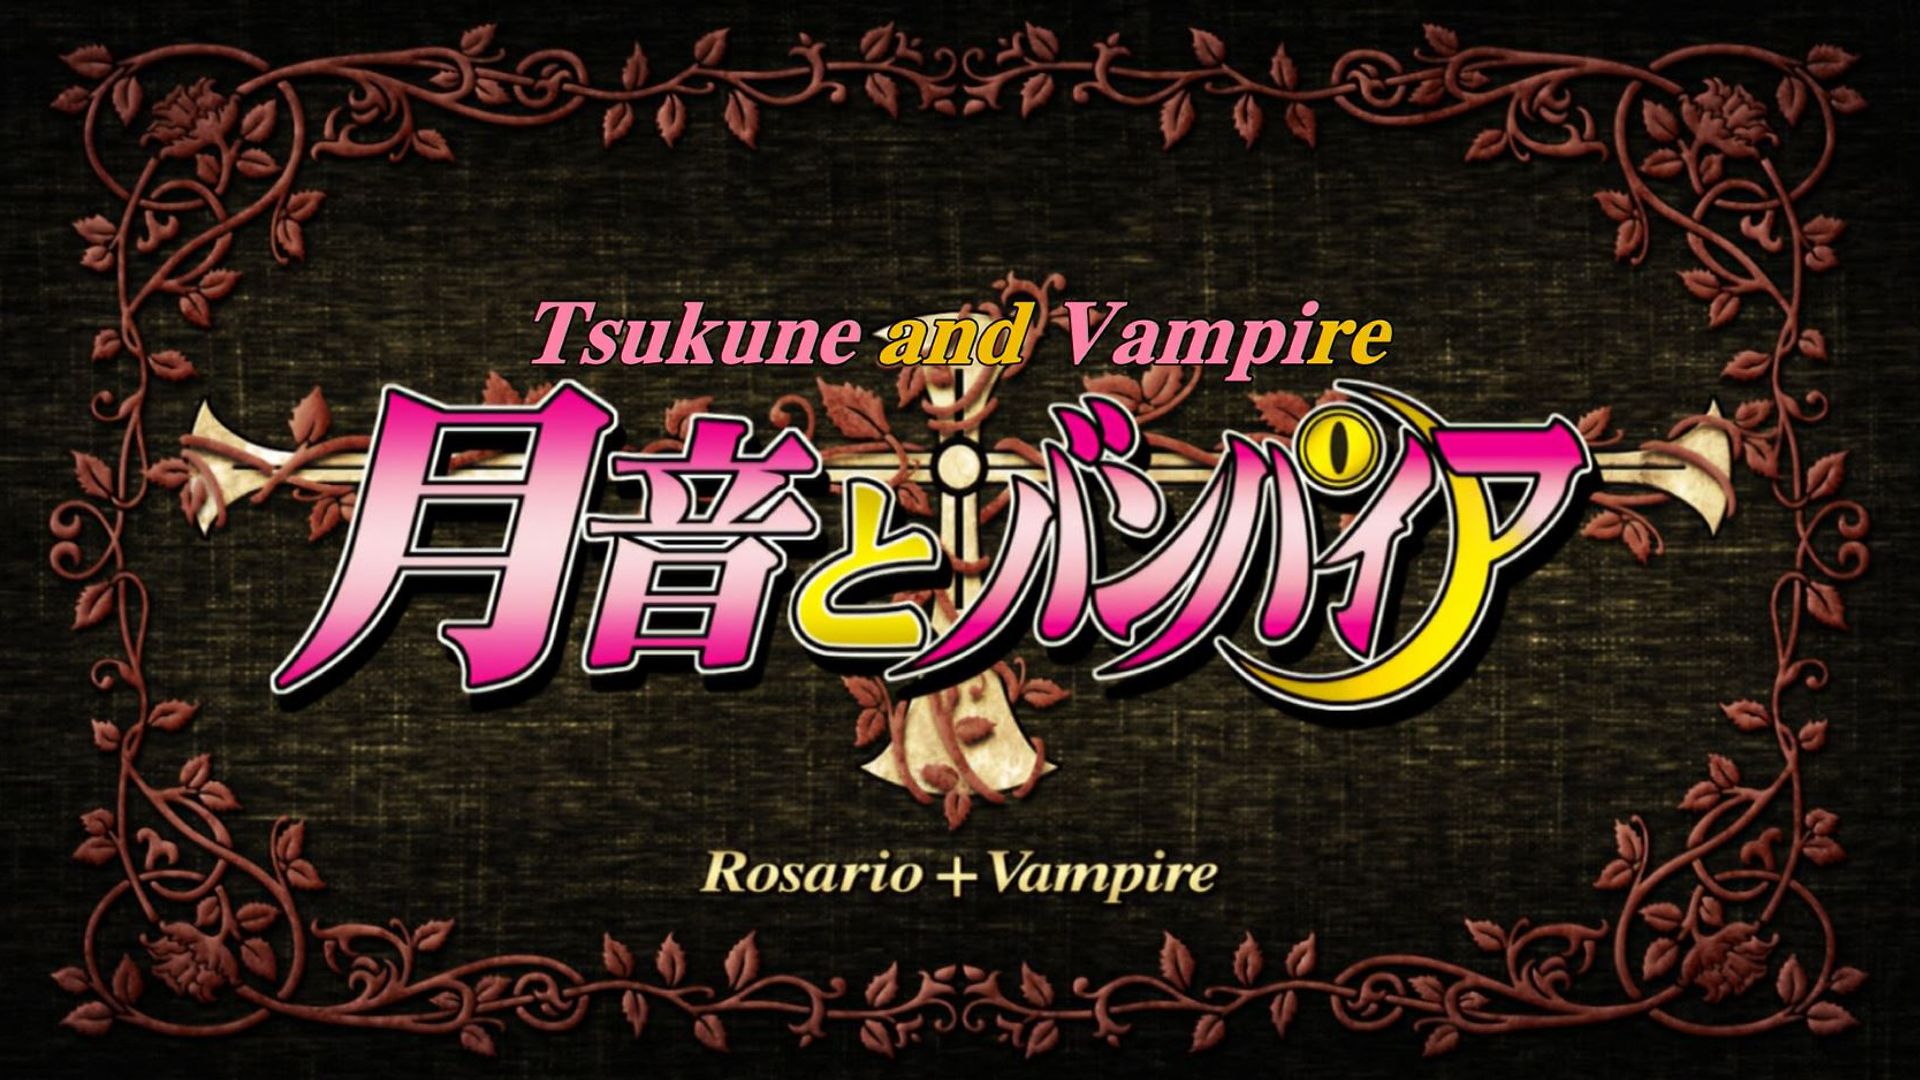 Rosario + Vampire background